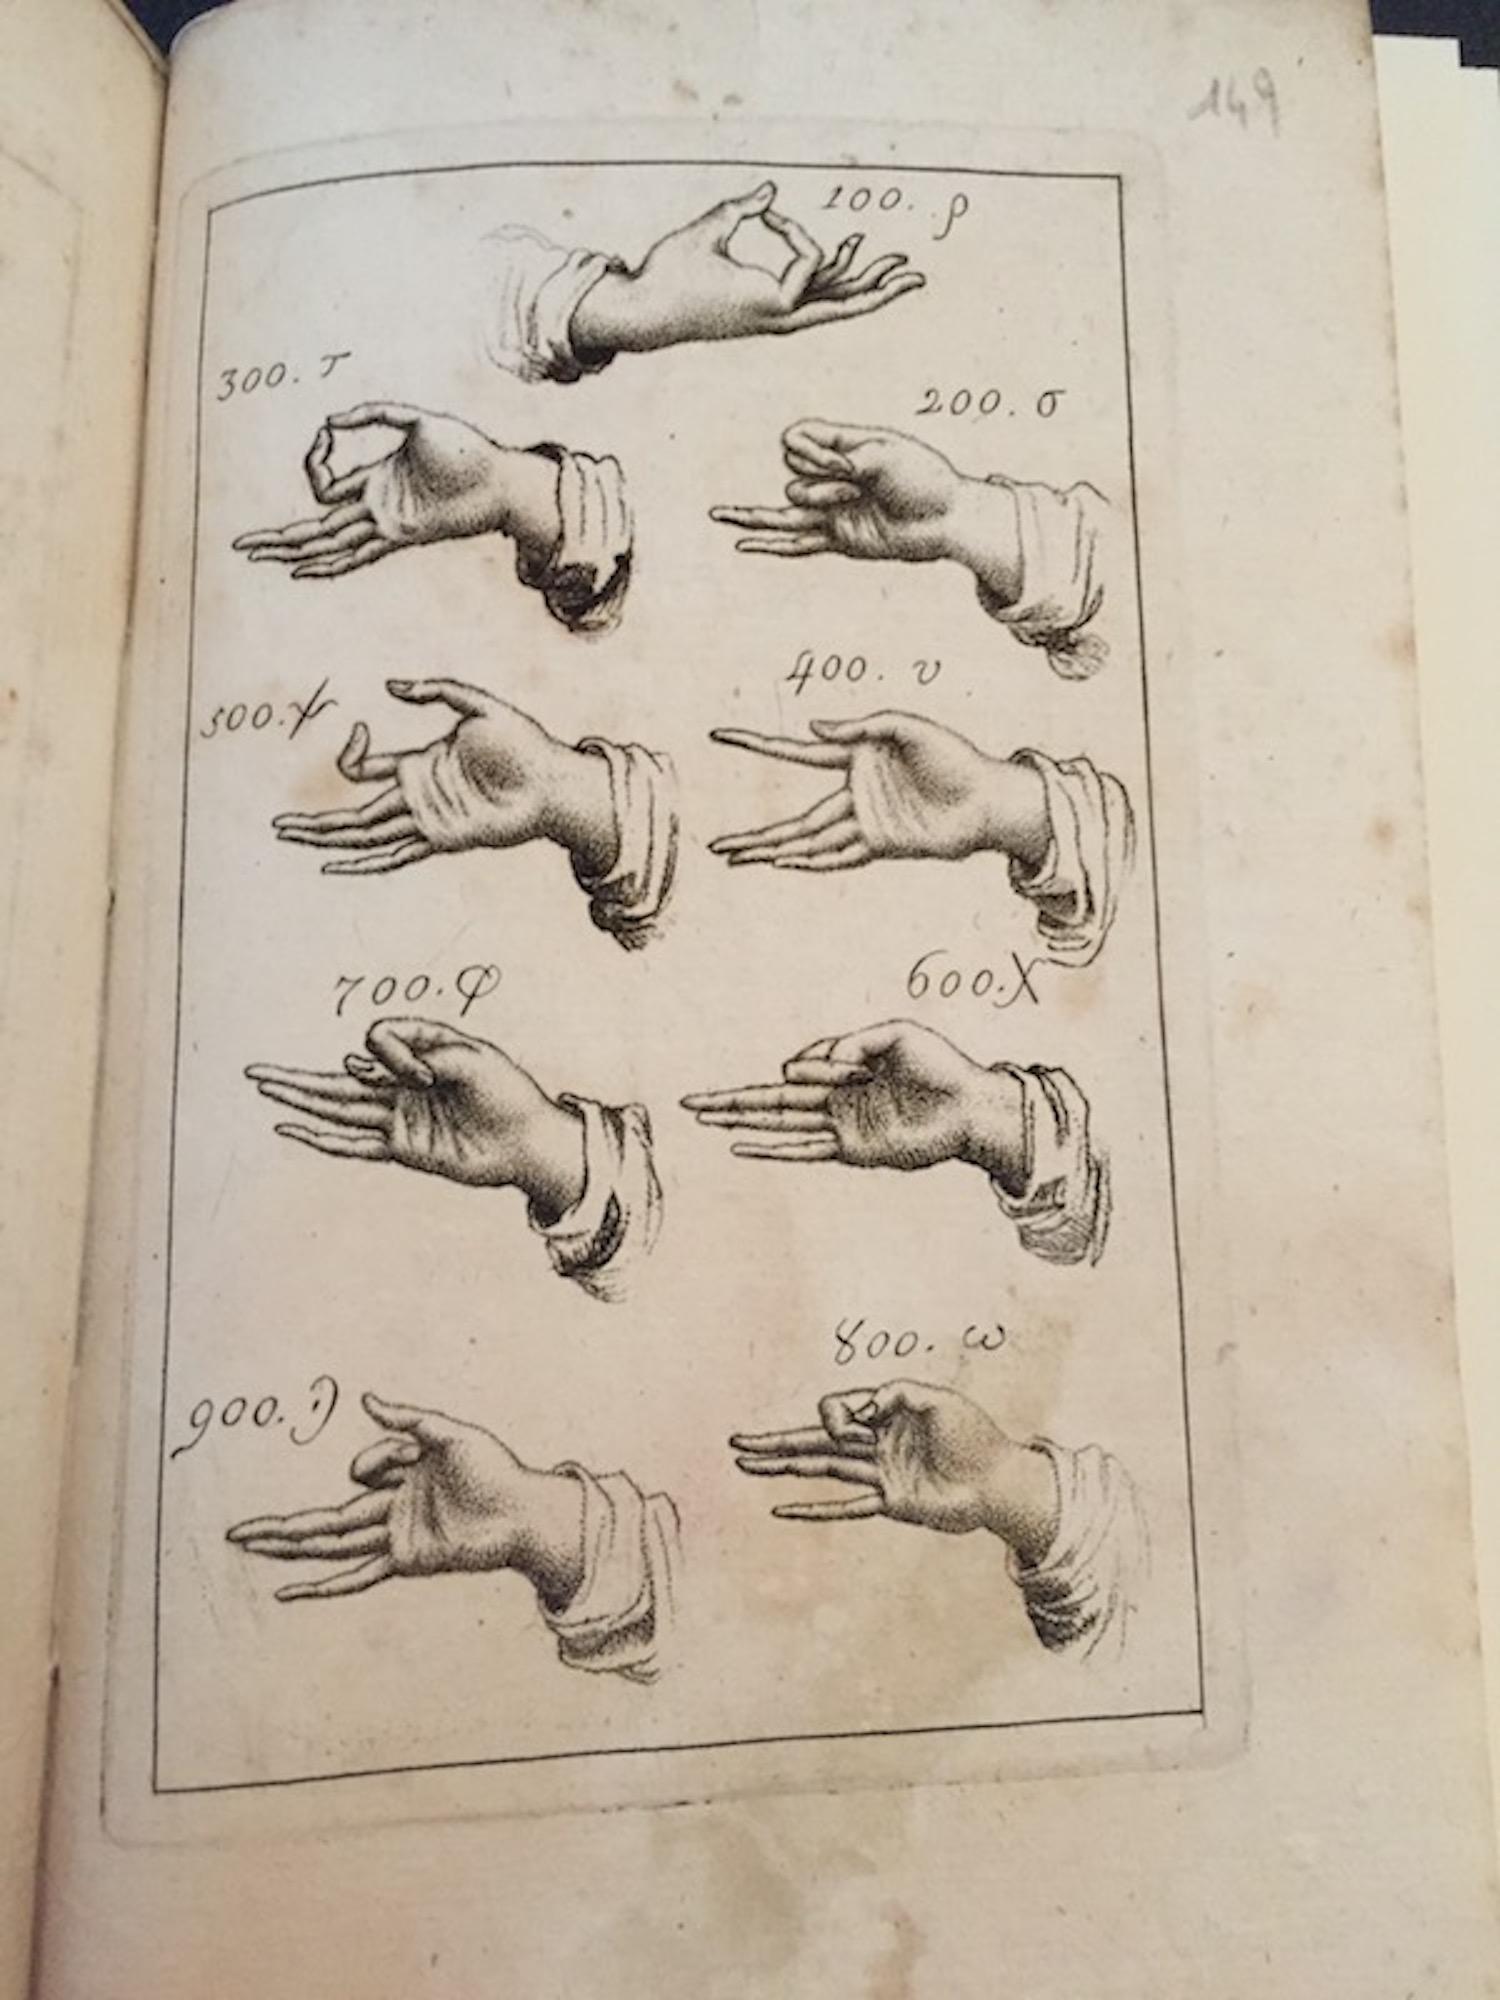 Scoperta della Chironimia ossia dell'arte di gestire con le mani... - 1797 – Art von Vincente Requeno